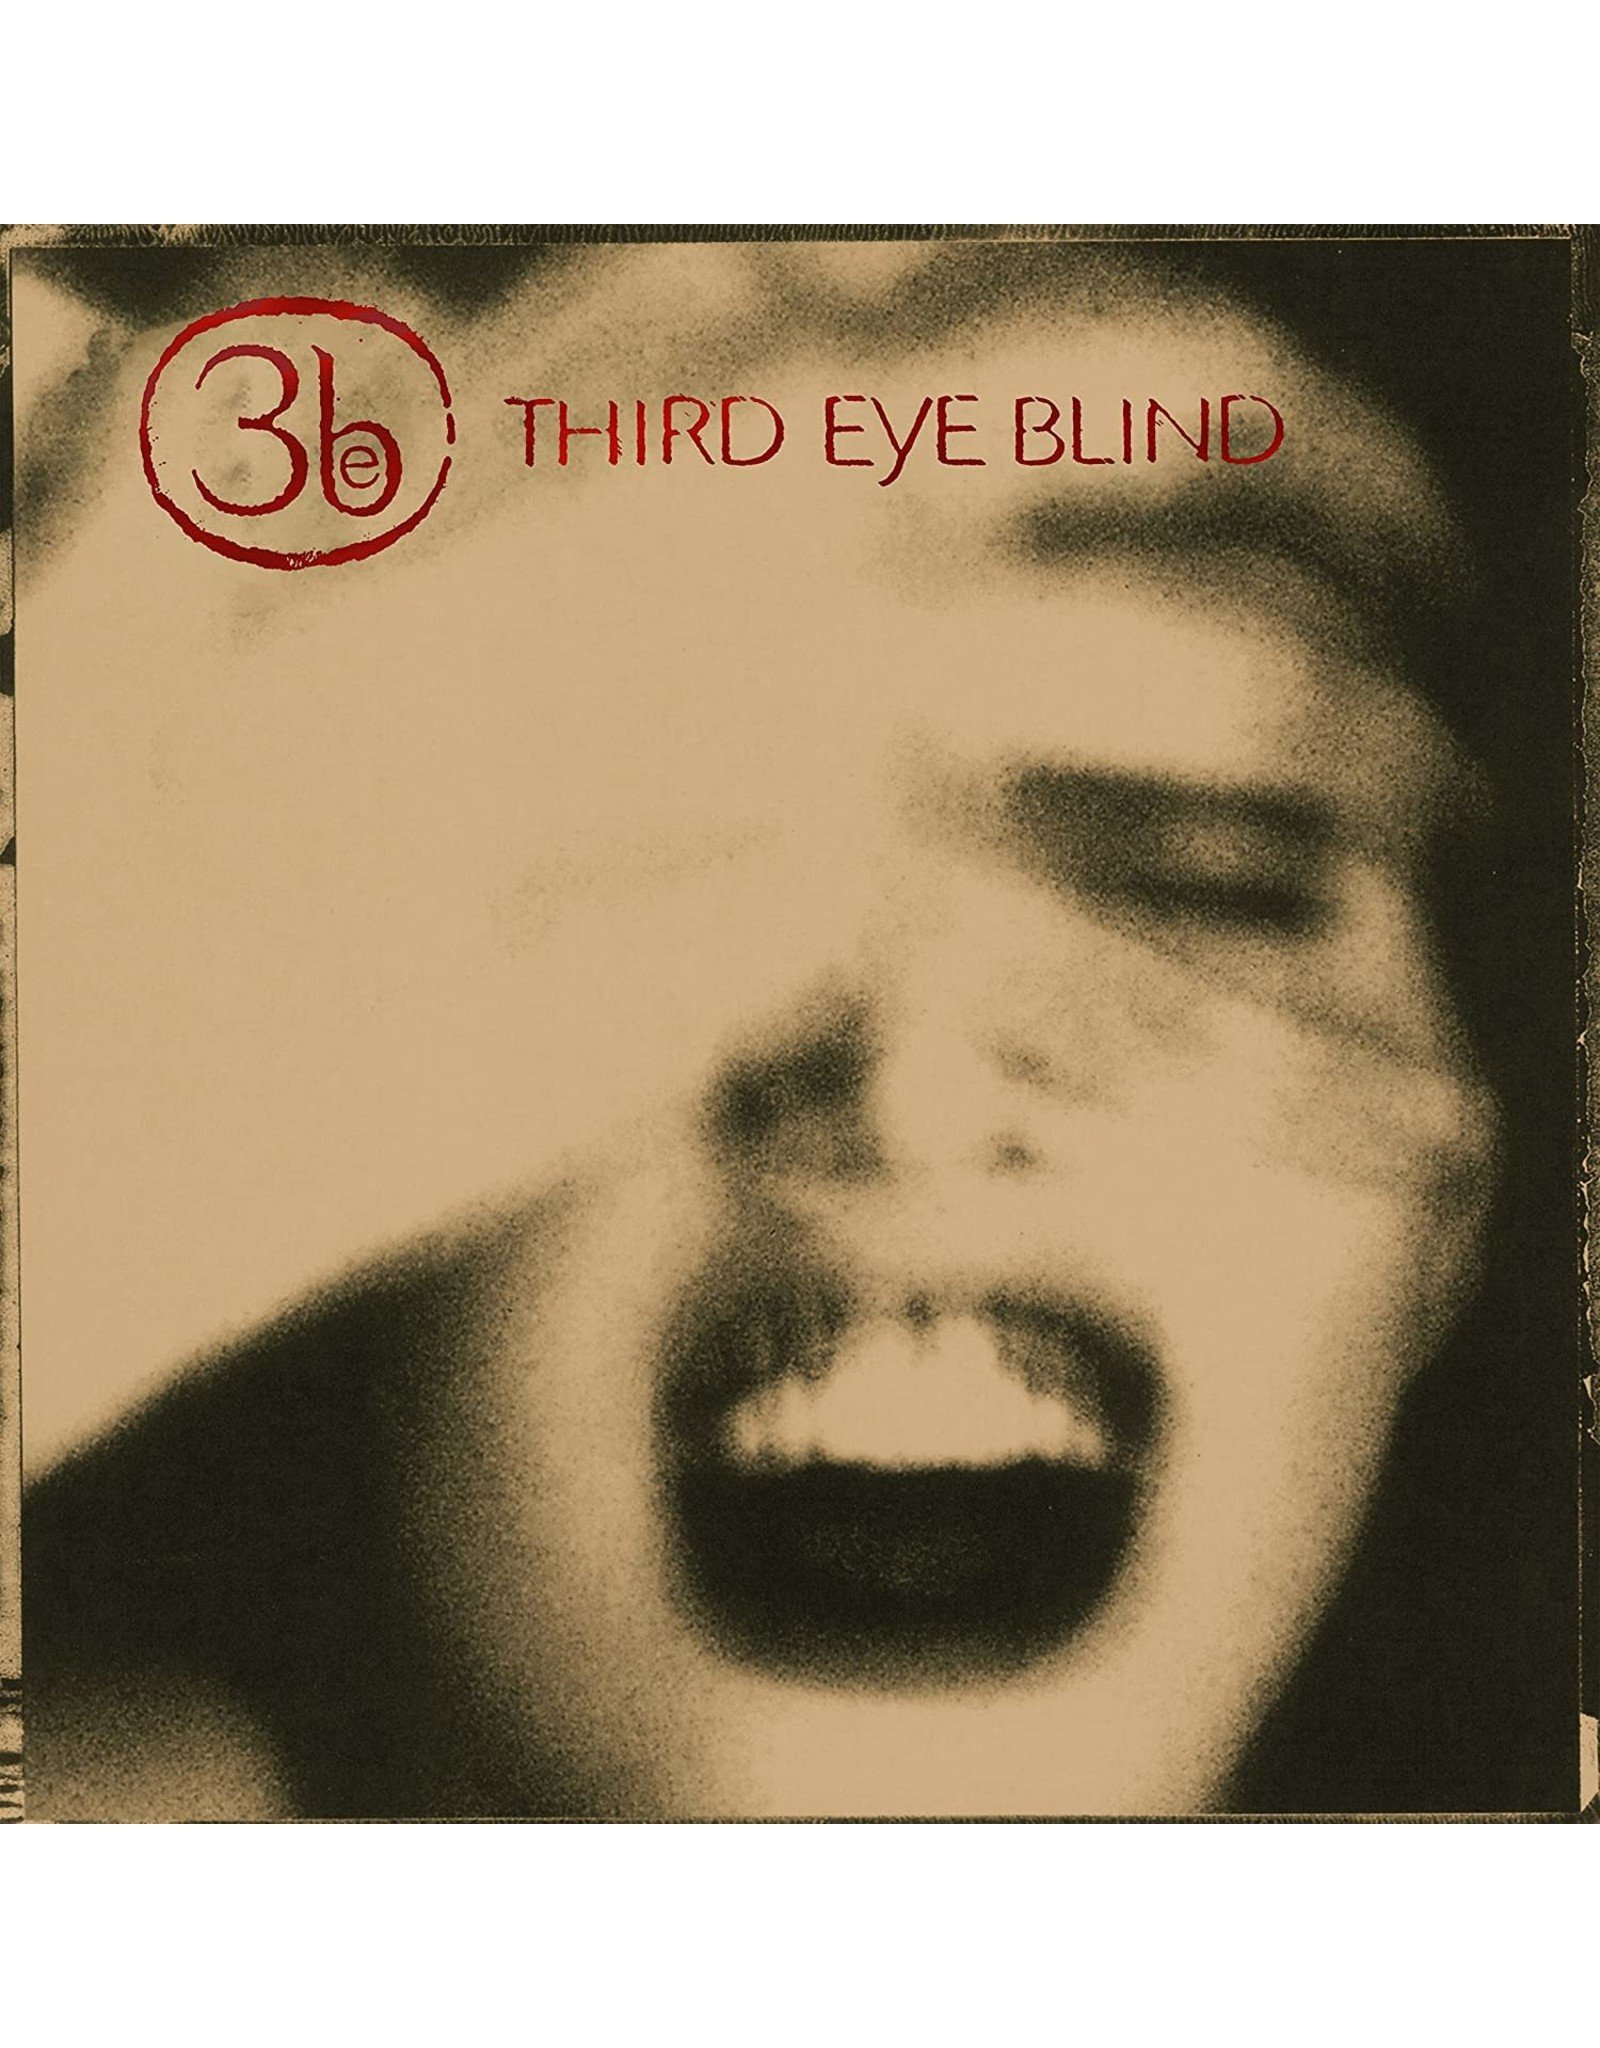 Third Eye Blind - Third Eye Blind (Exclusive Gold Vinyl)